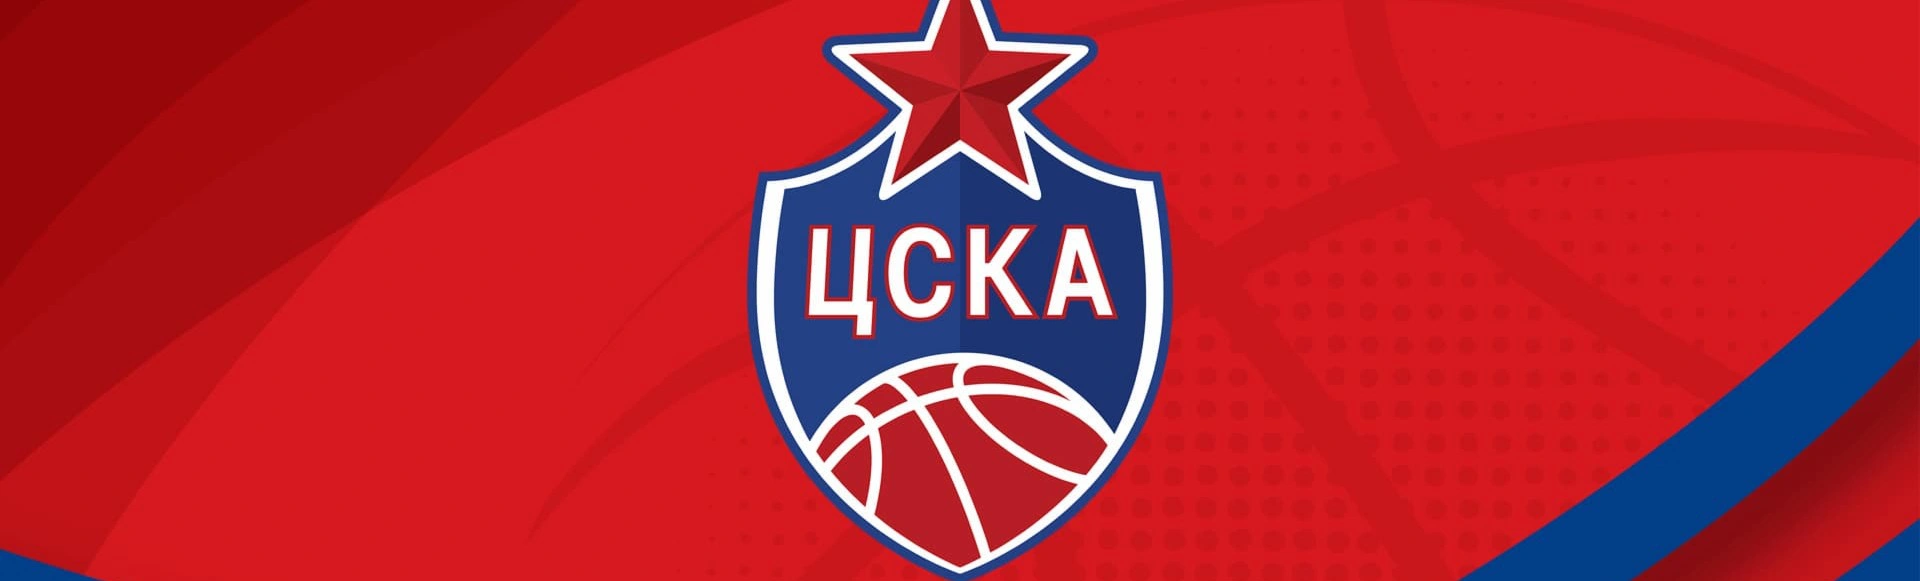 «ЦСКА» проводит пресс-конференцию в онлайн-формате